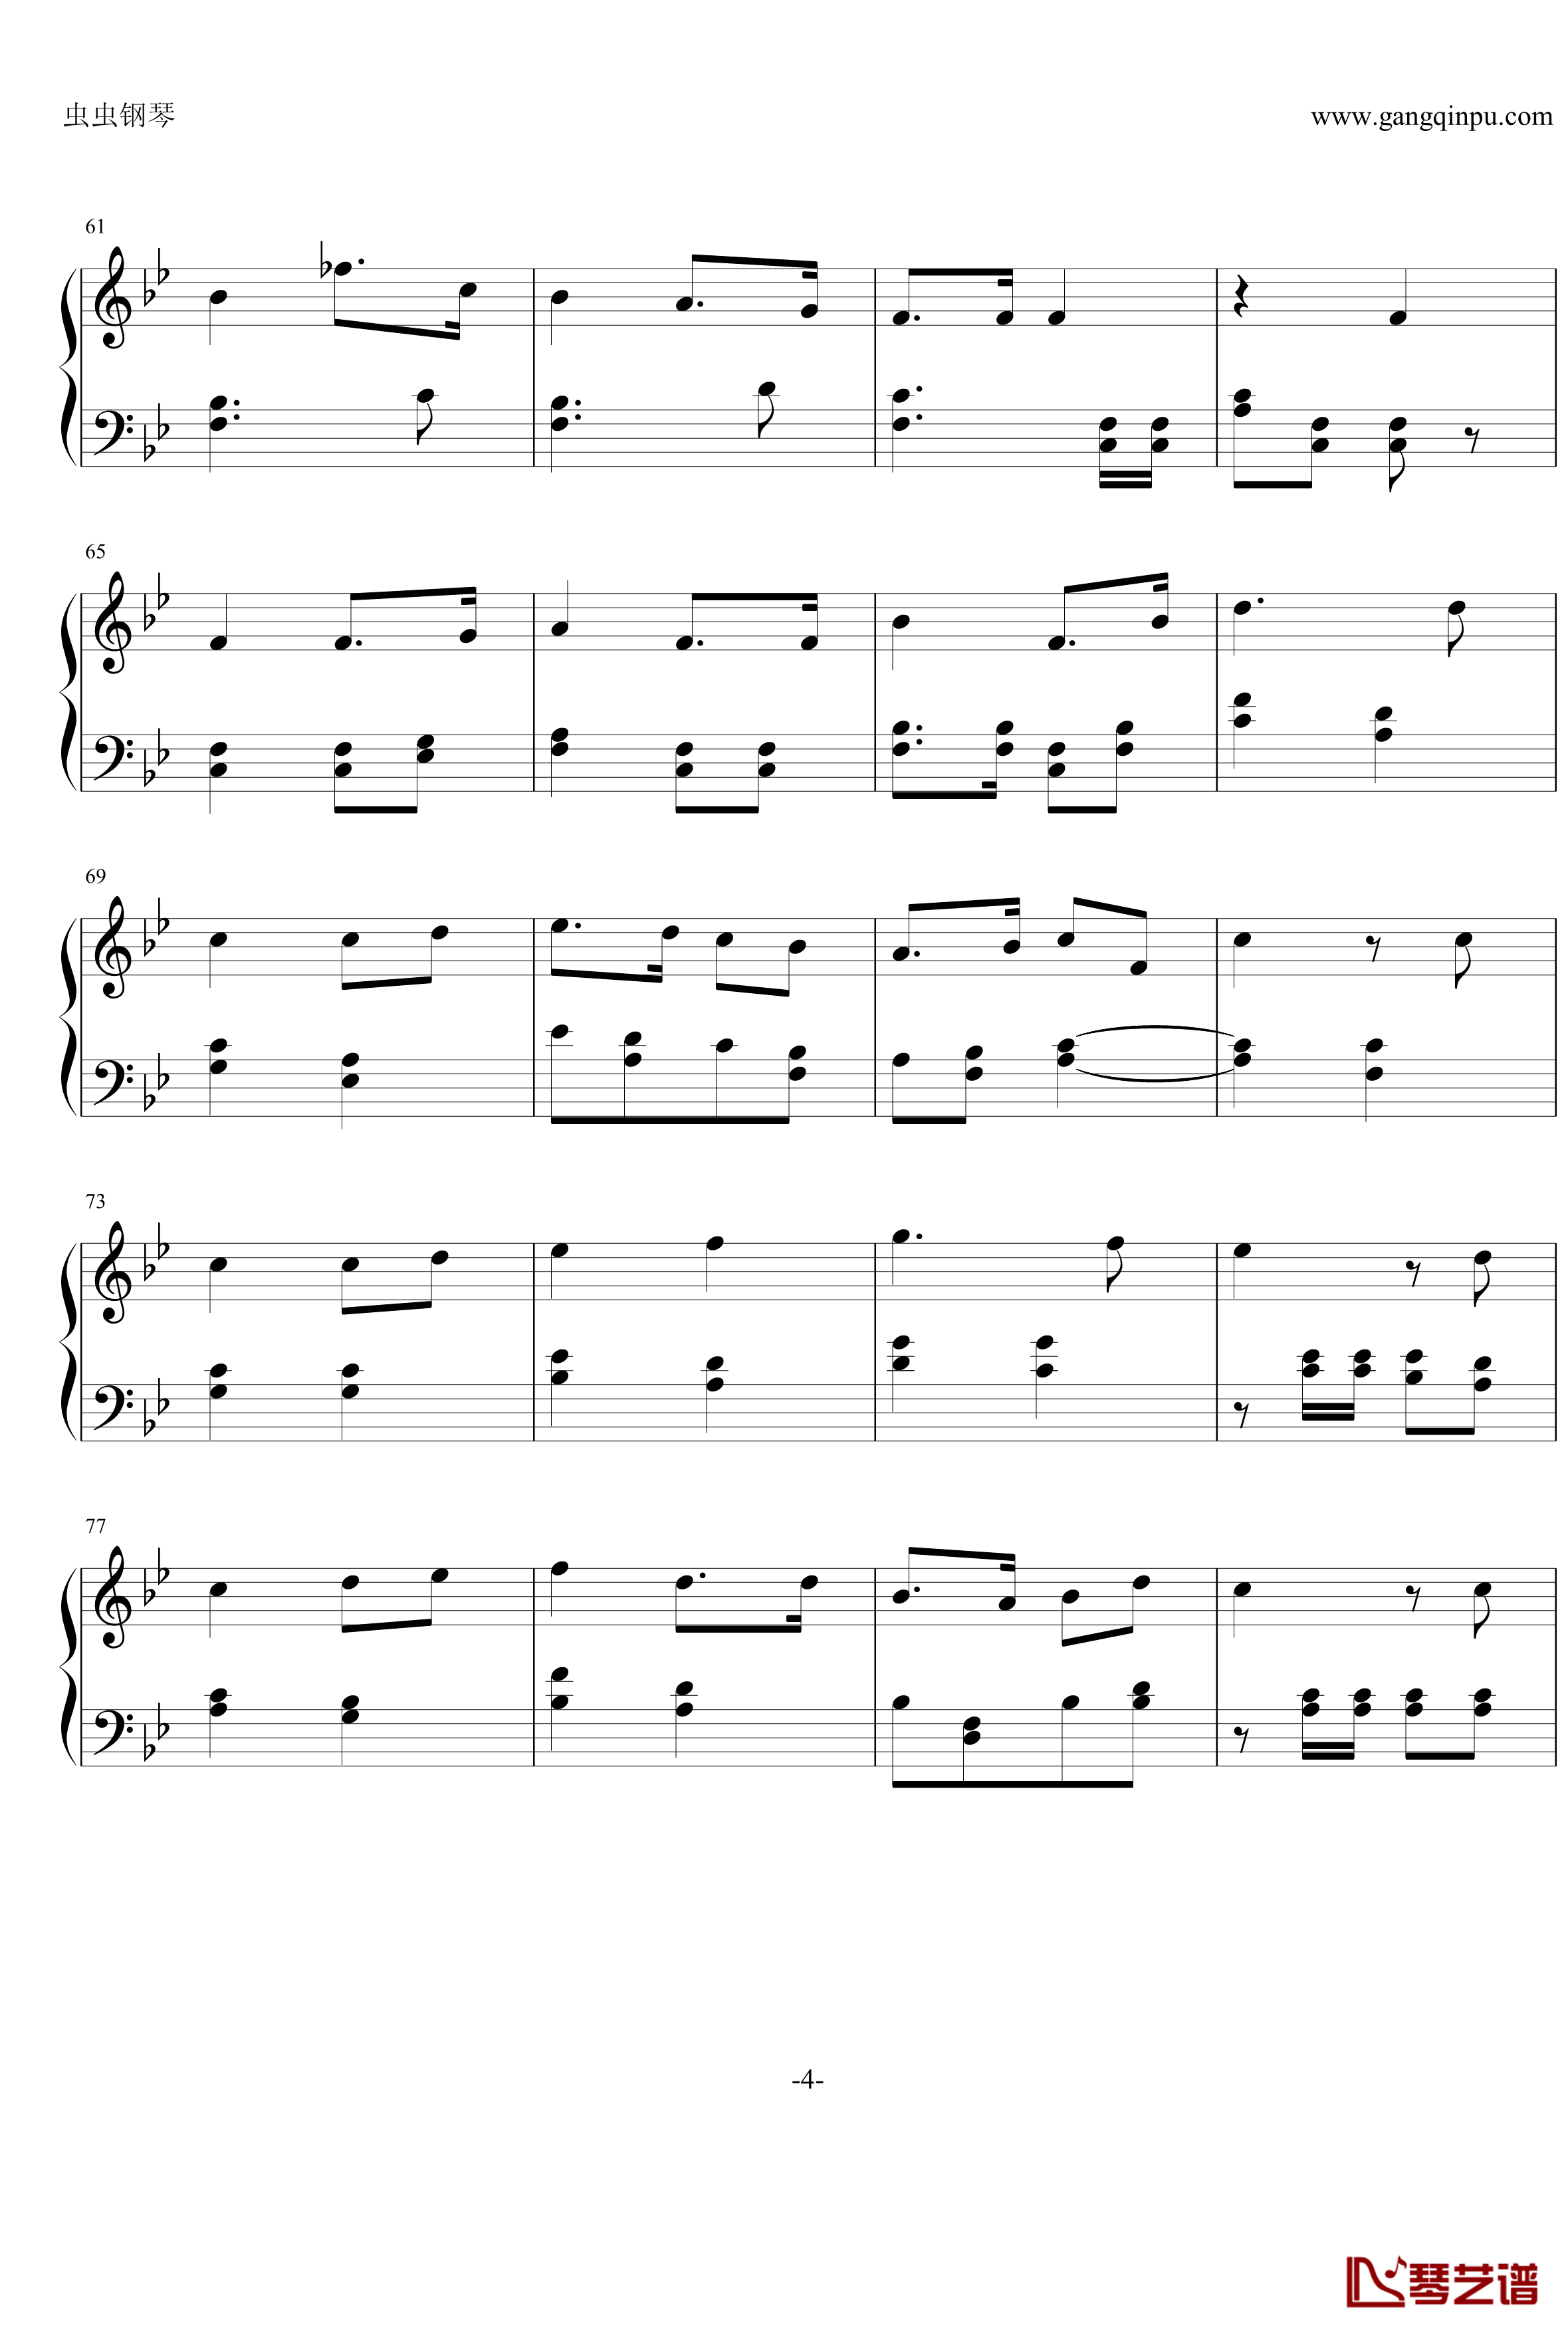 斯图卡之歌钢琴谱-世界名曲